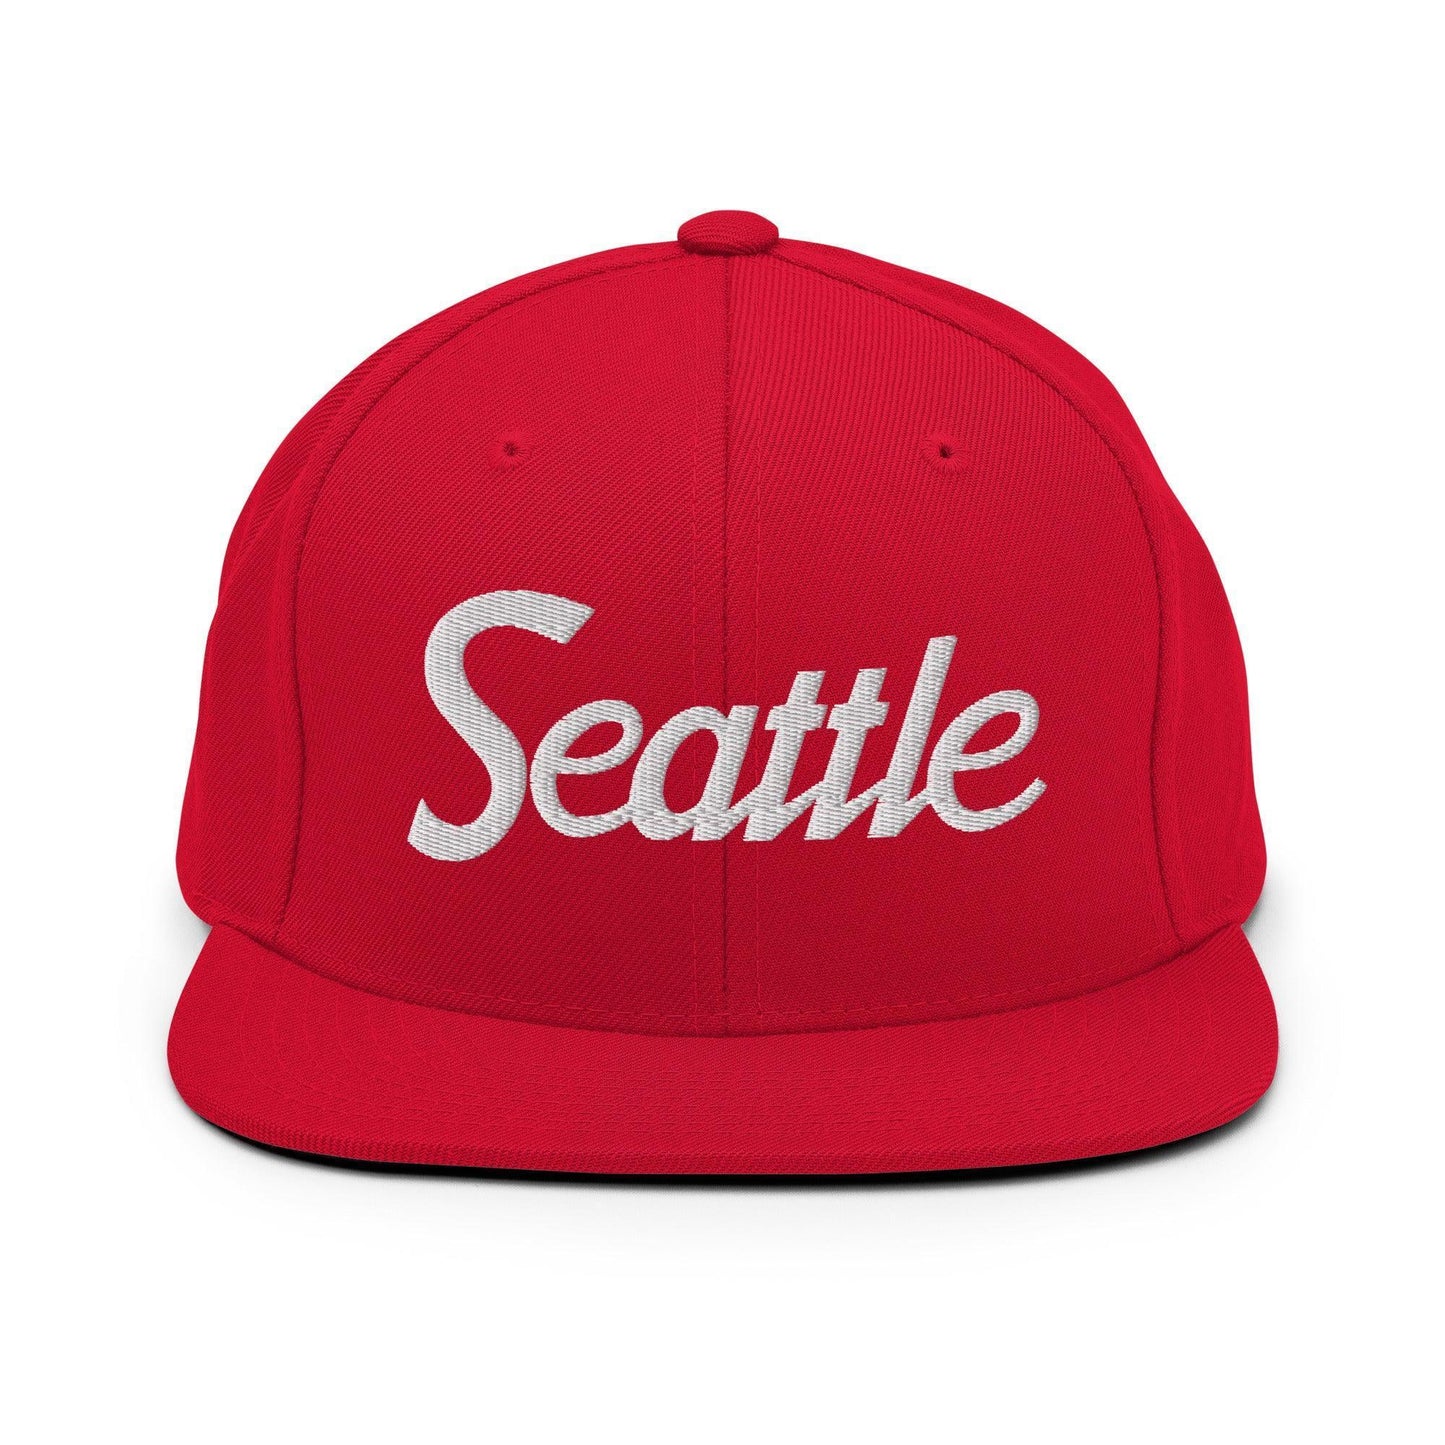 Seattle Script Snapback Hat Red